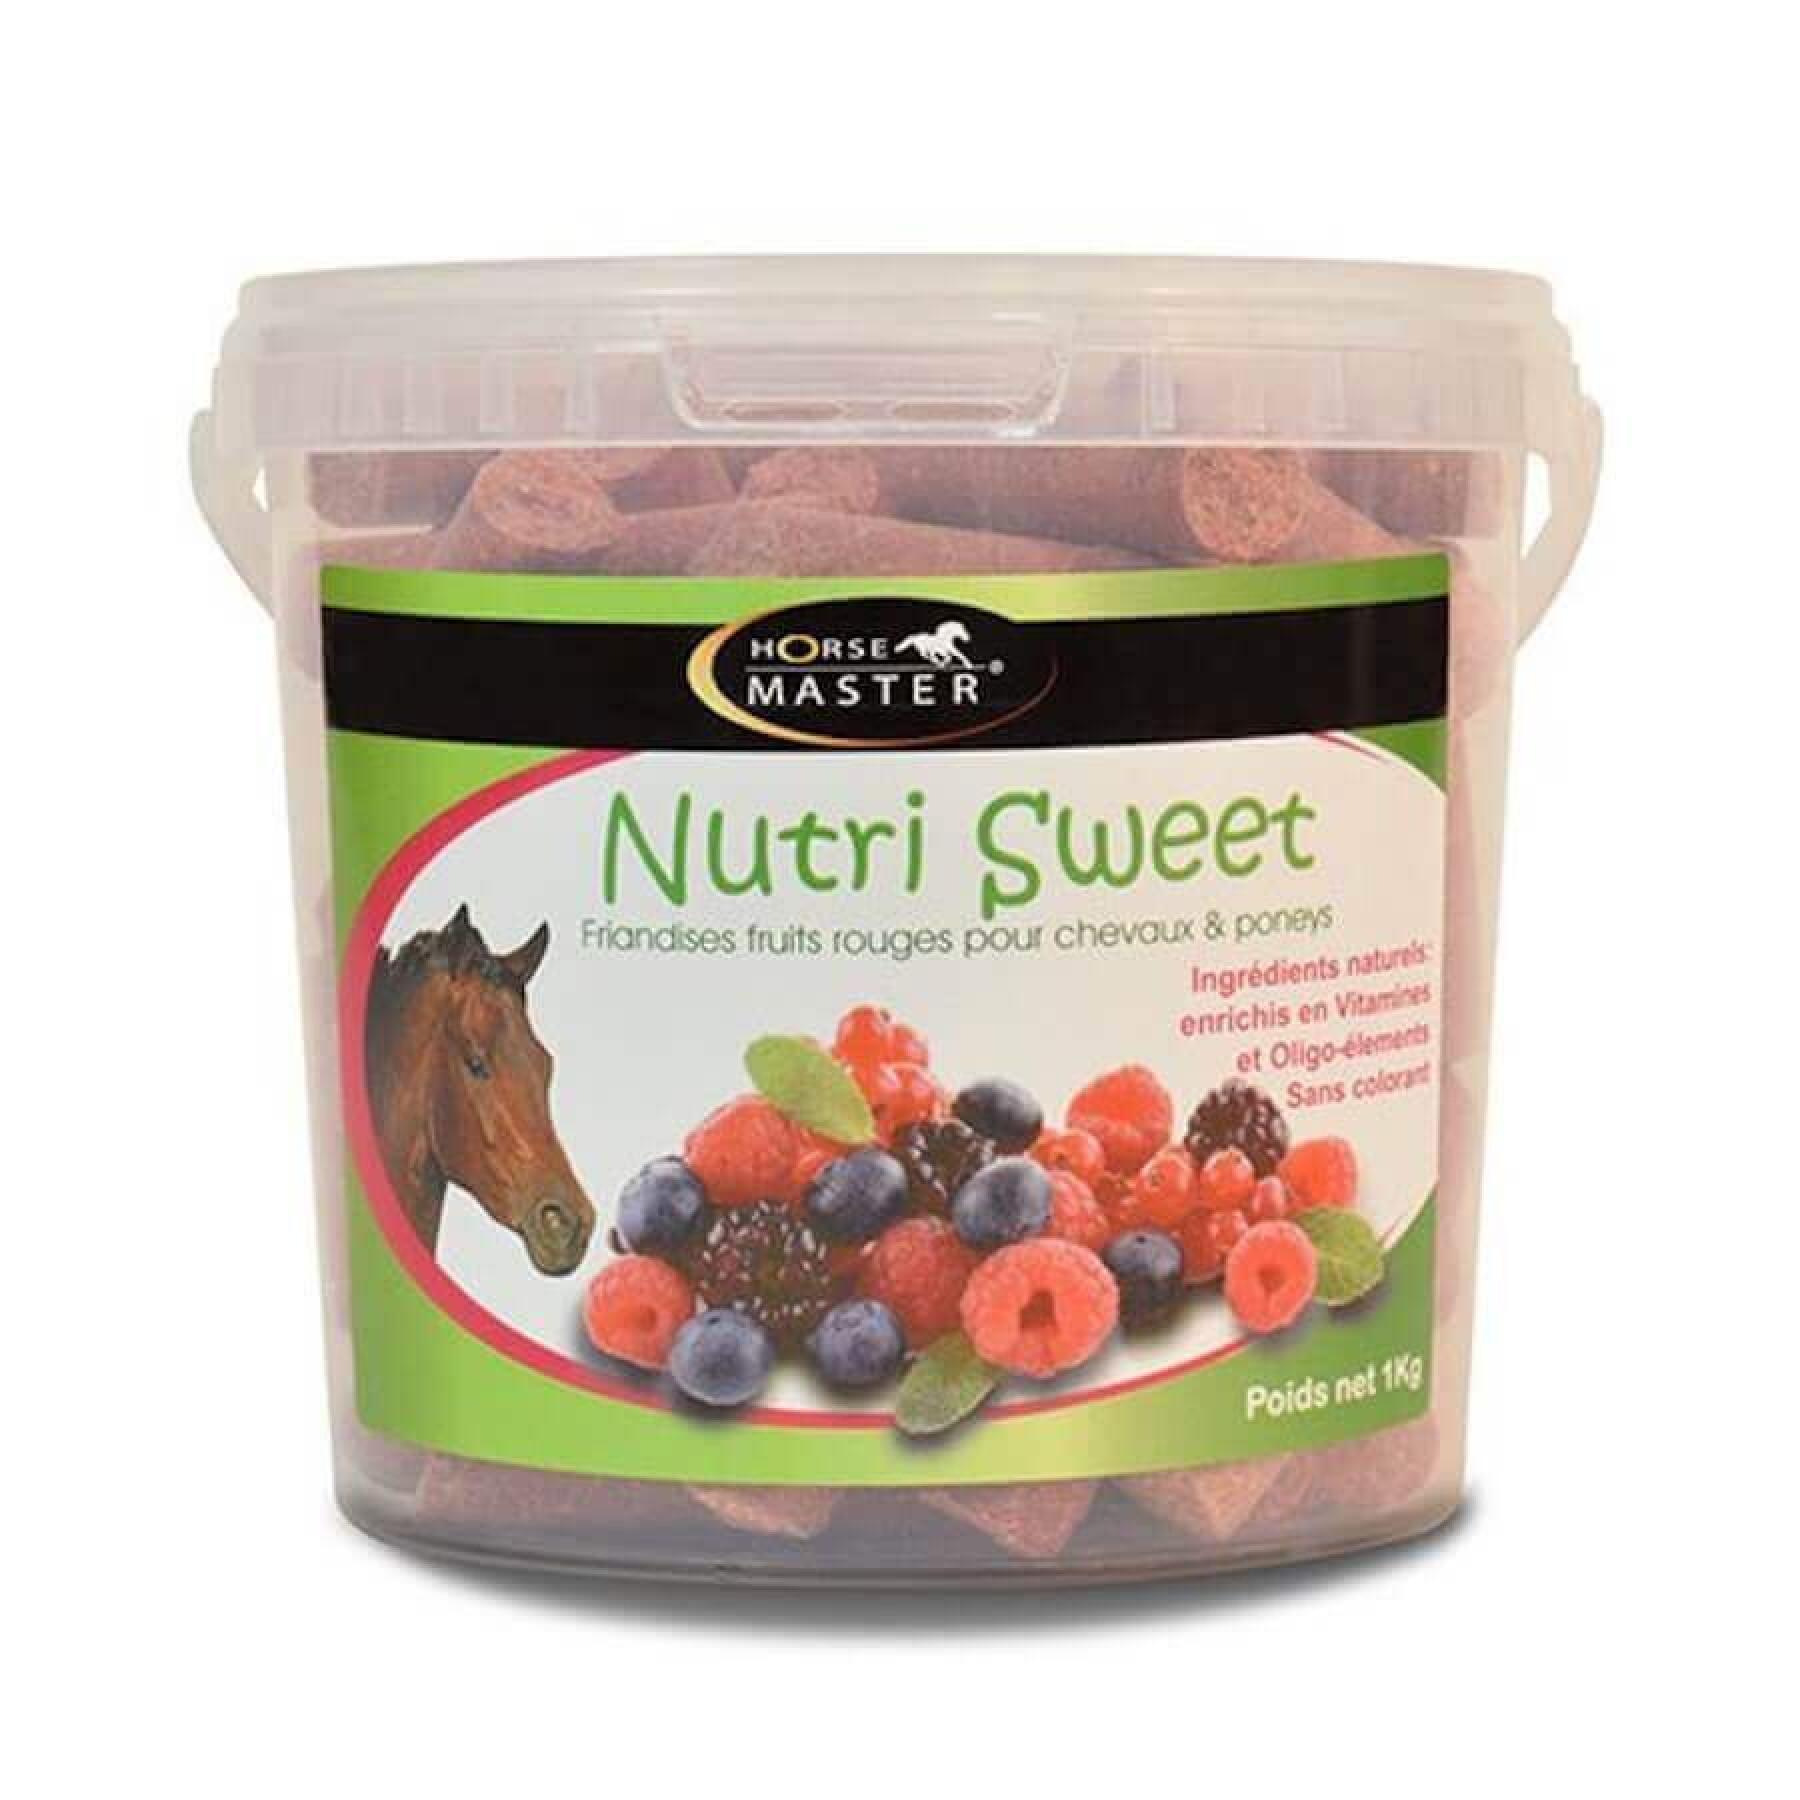 Horse treats Horse Master Nutri Sweet - Fruits Rouges 2,5 kg